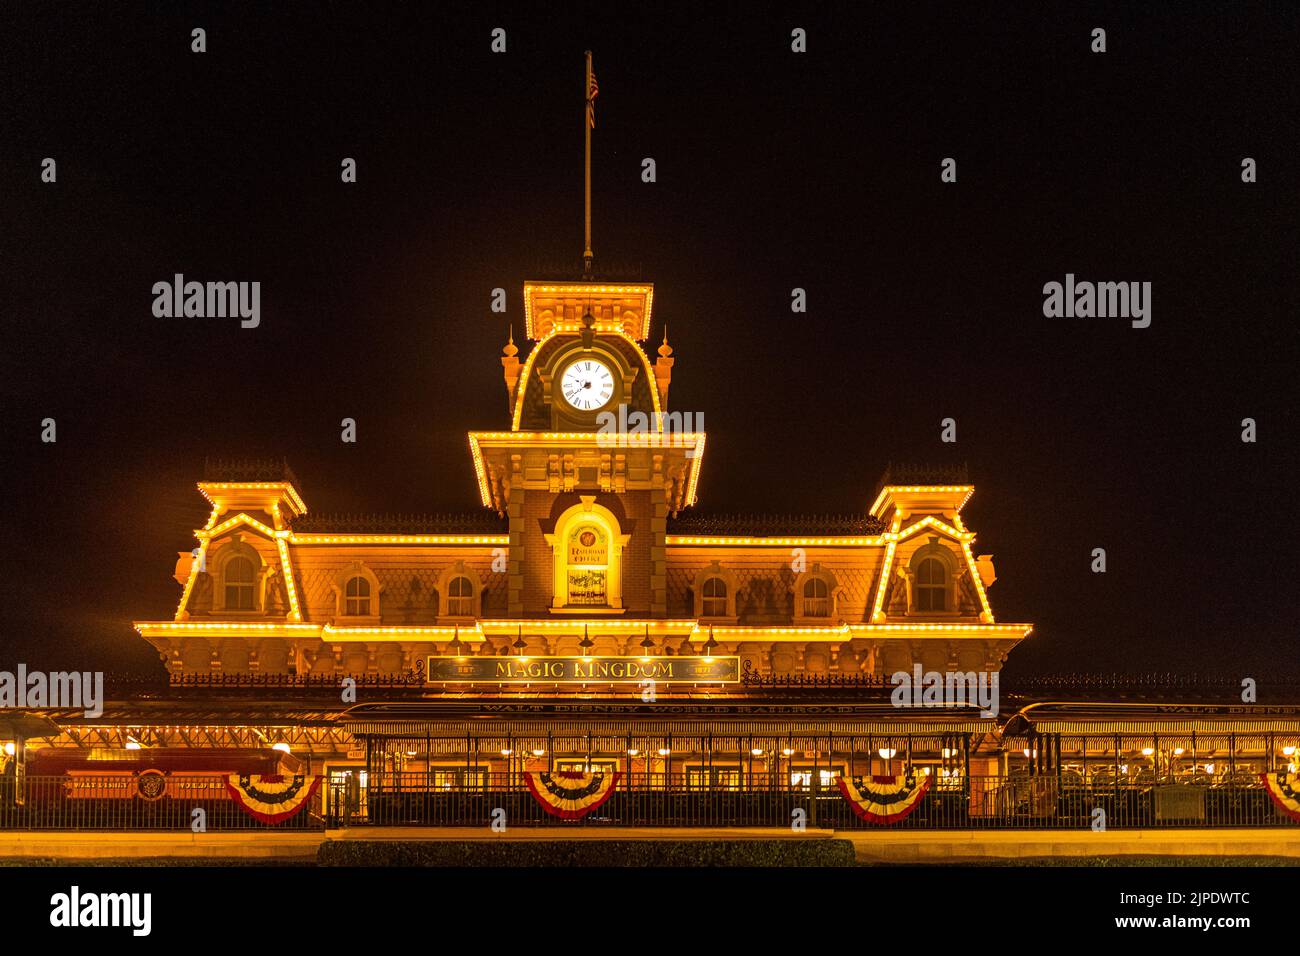 Der Bahnhof Magic Kingdom beleuchtet in der Nacht. Stockfoto